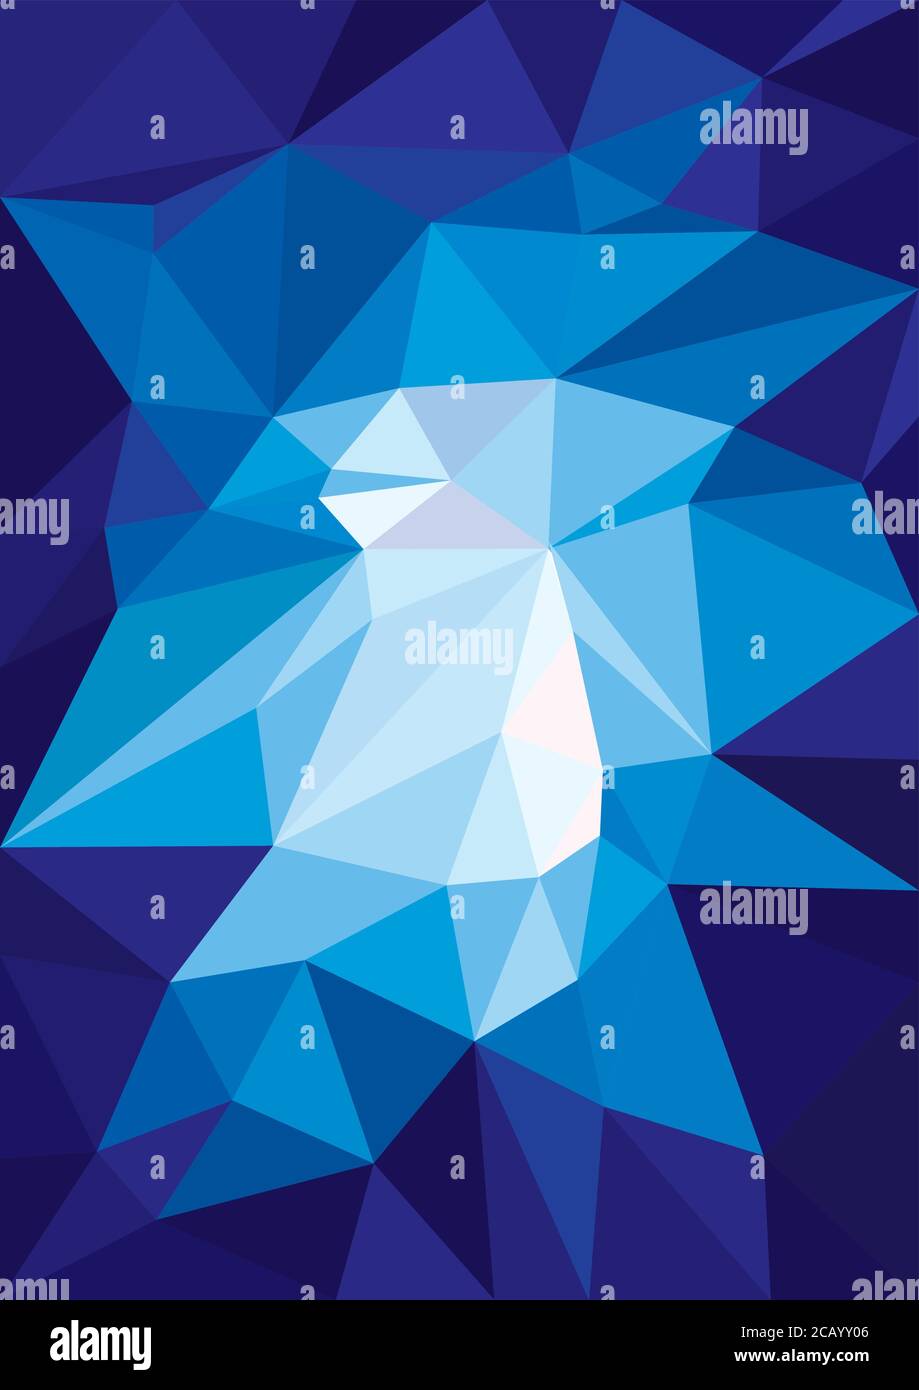 Heller abstrakter Hintergrund mit blauen Polygonen Stock Vektor